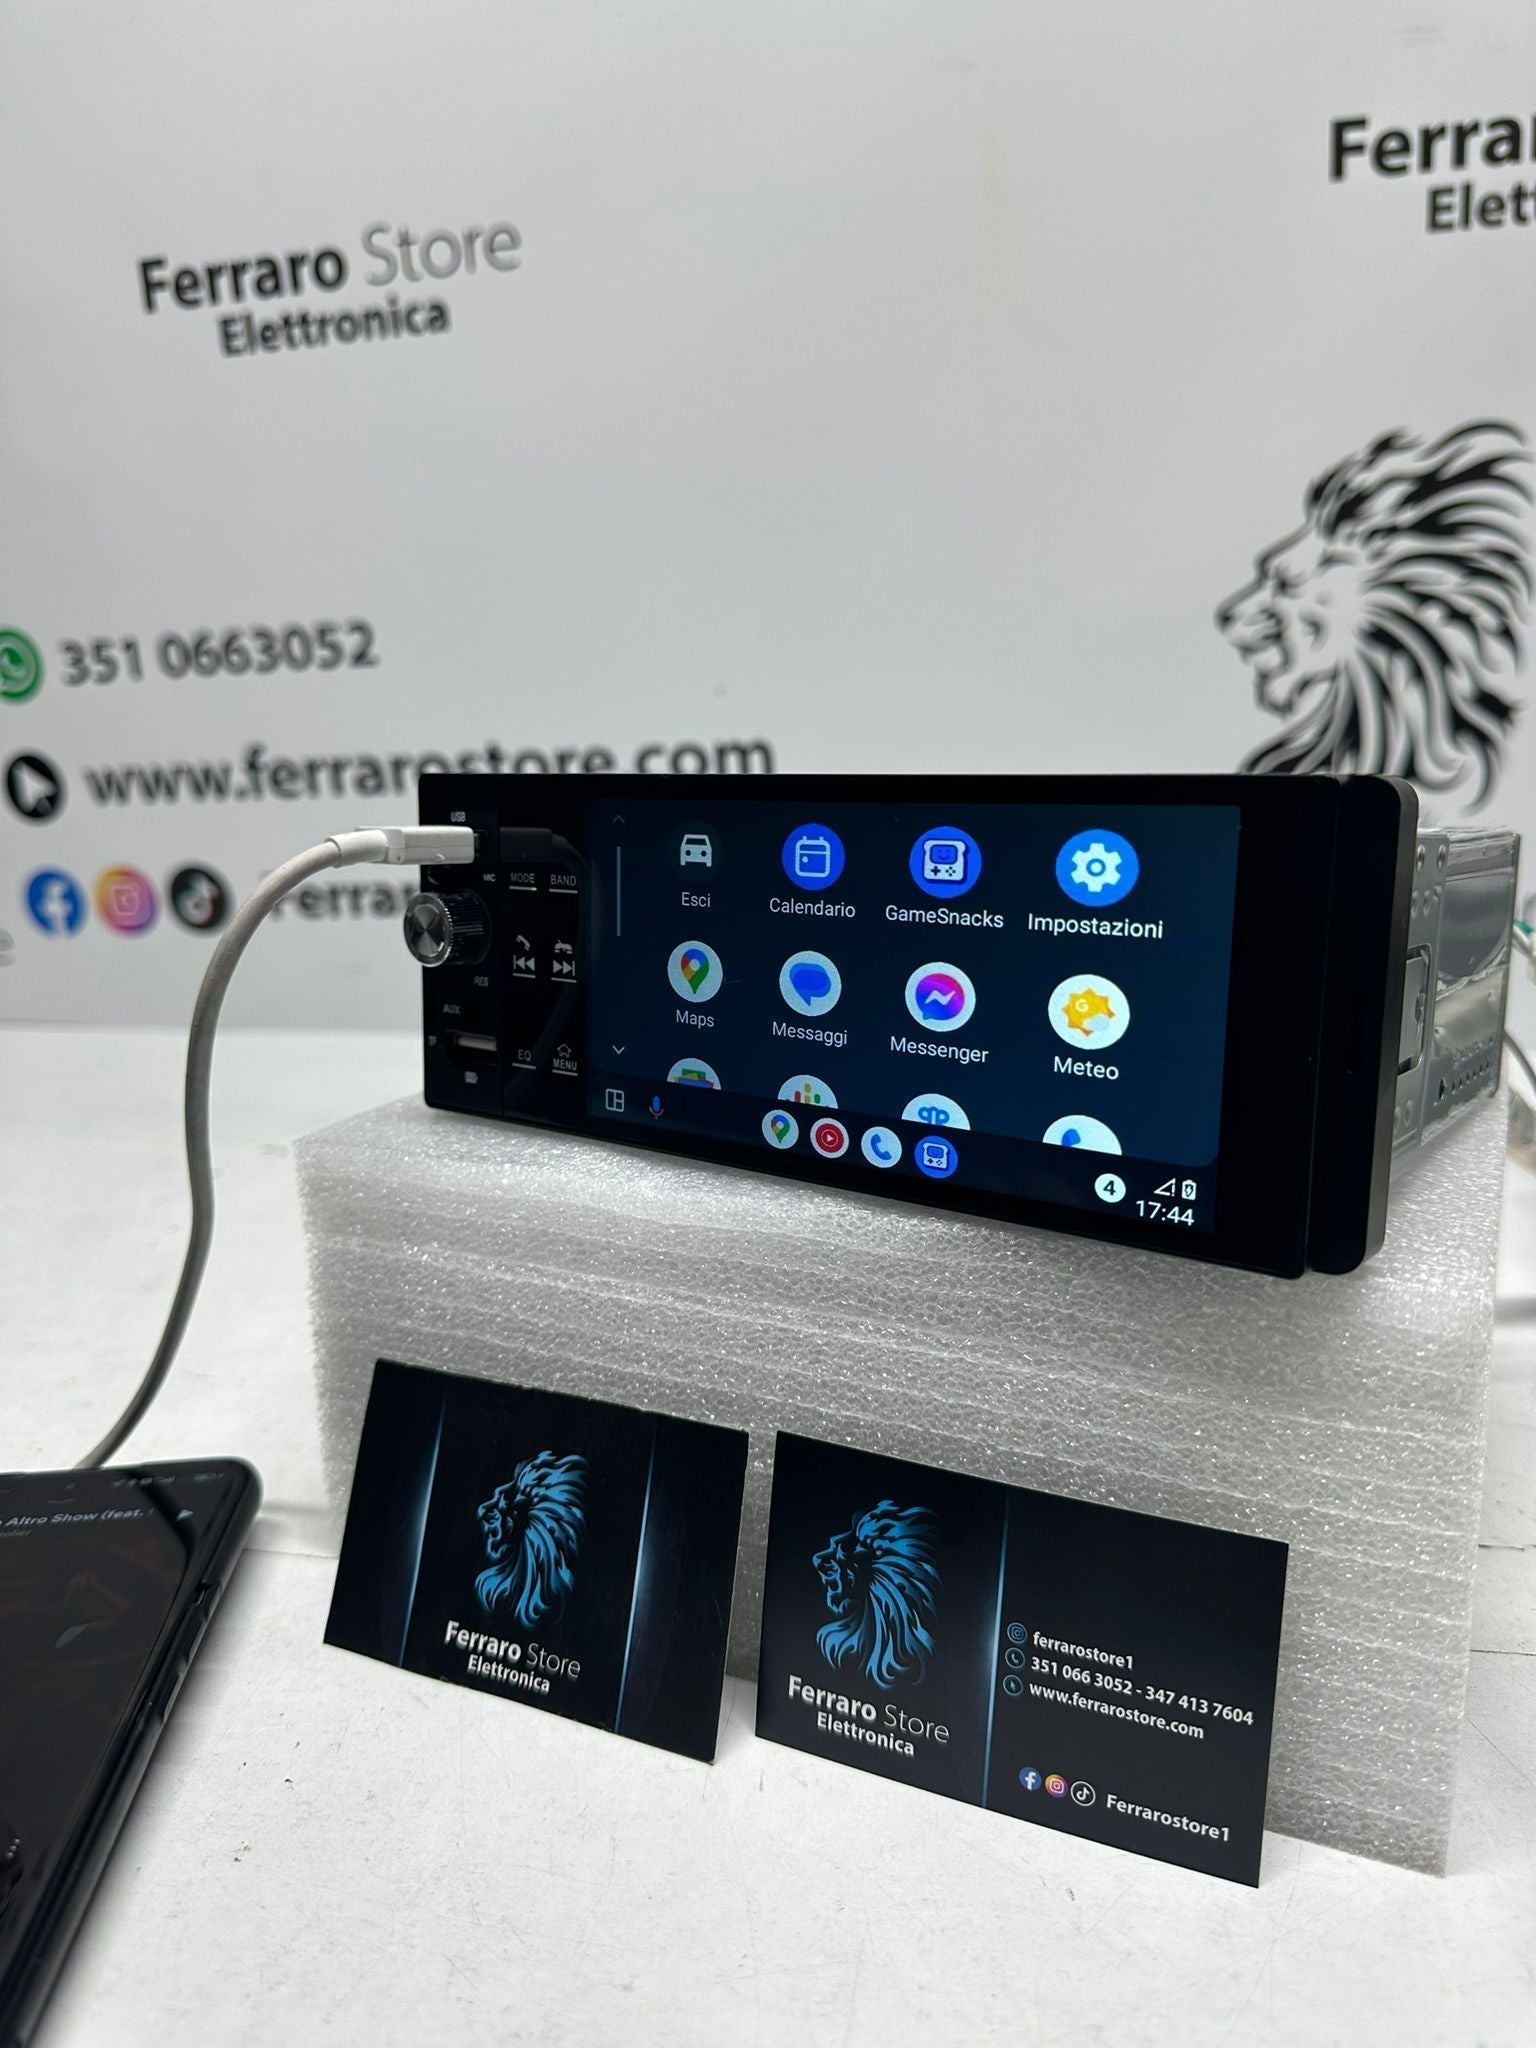 Autoradio per Fiat PUNTO EVO [2009 in Poi] - 1Din, Schermo 5.5"Pollici, Bluetooth, Radio, USB, CarPlay & Android Auto Cablato